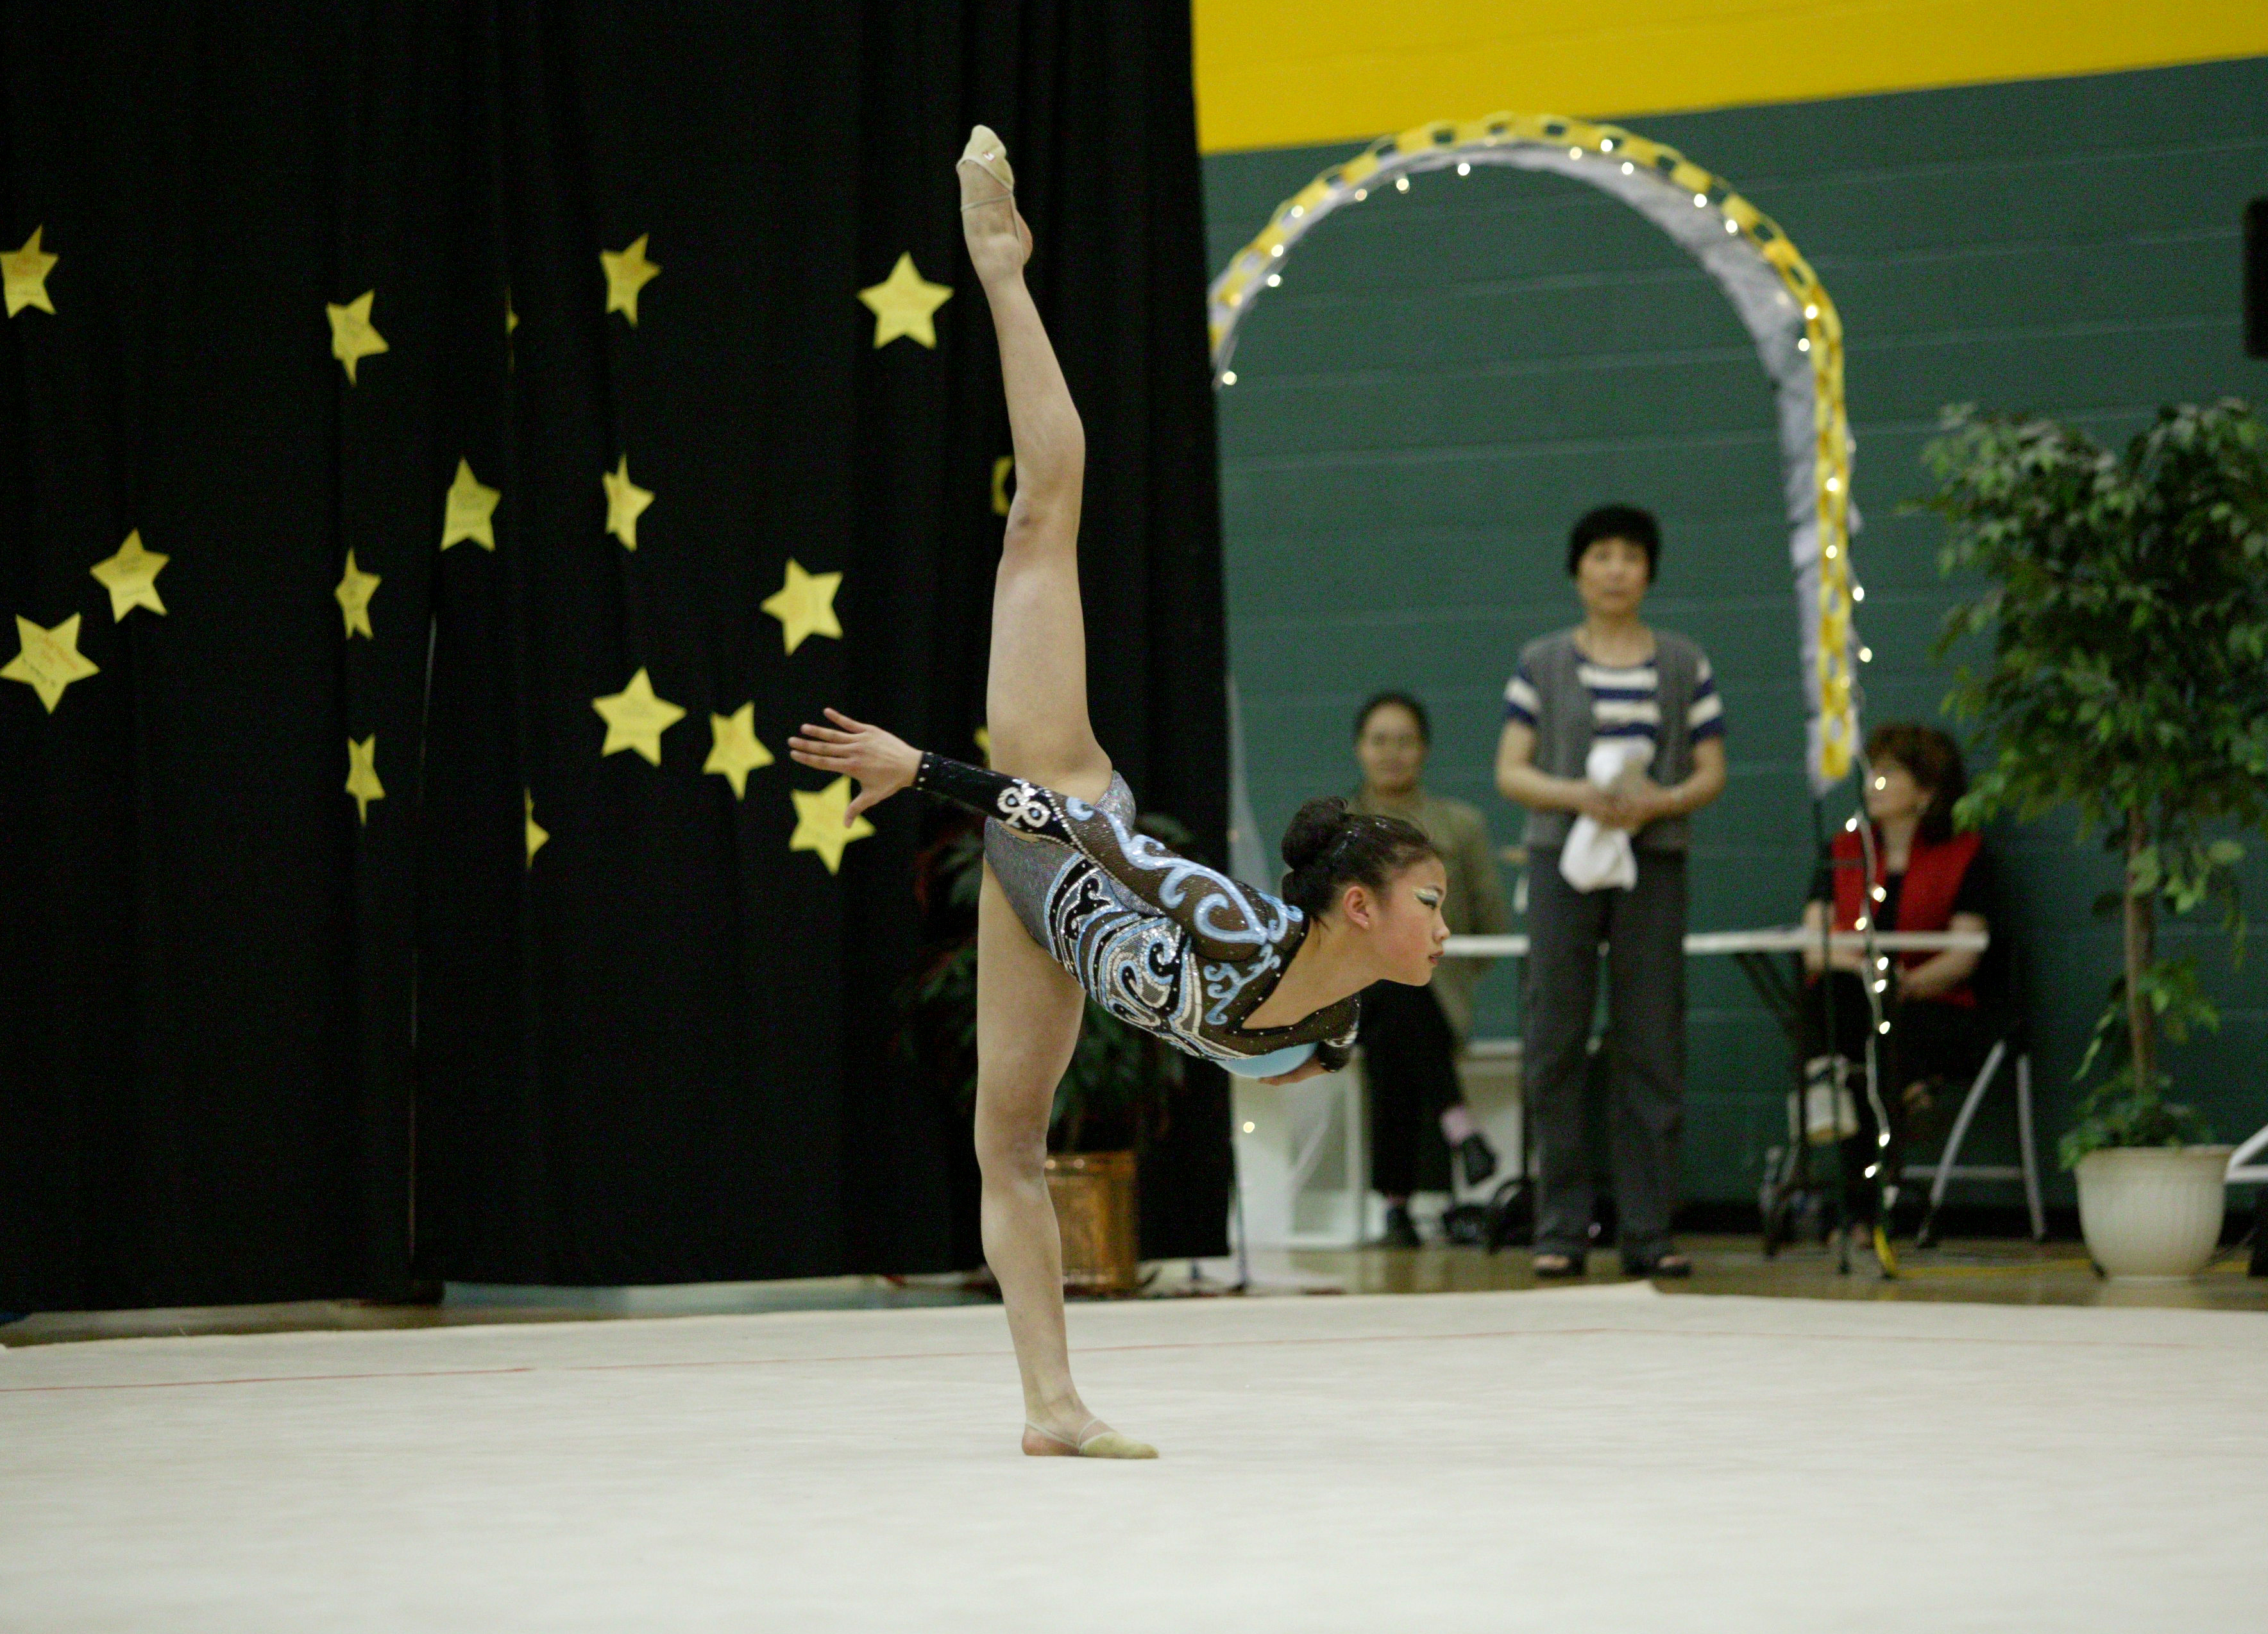 Rhythmic Gymnast